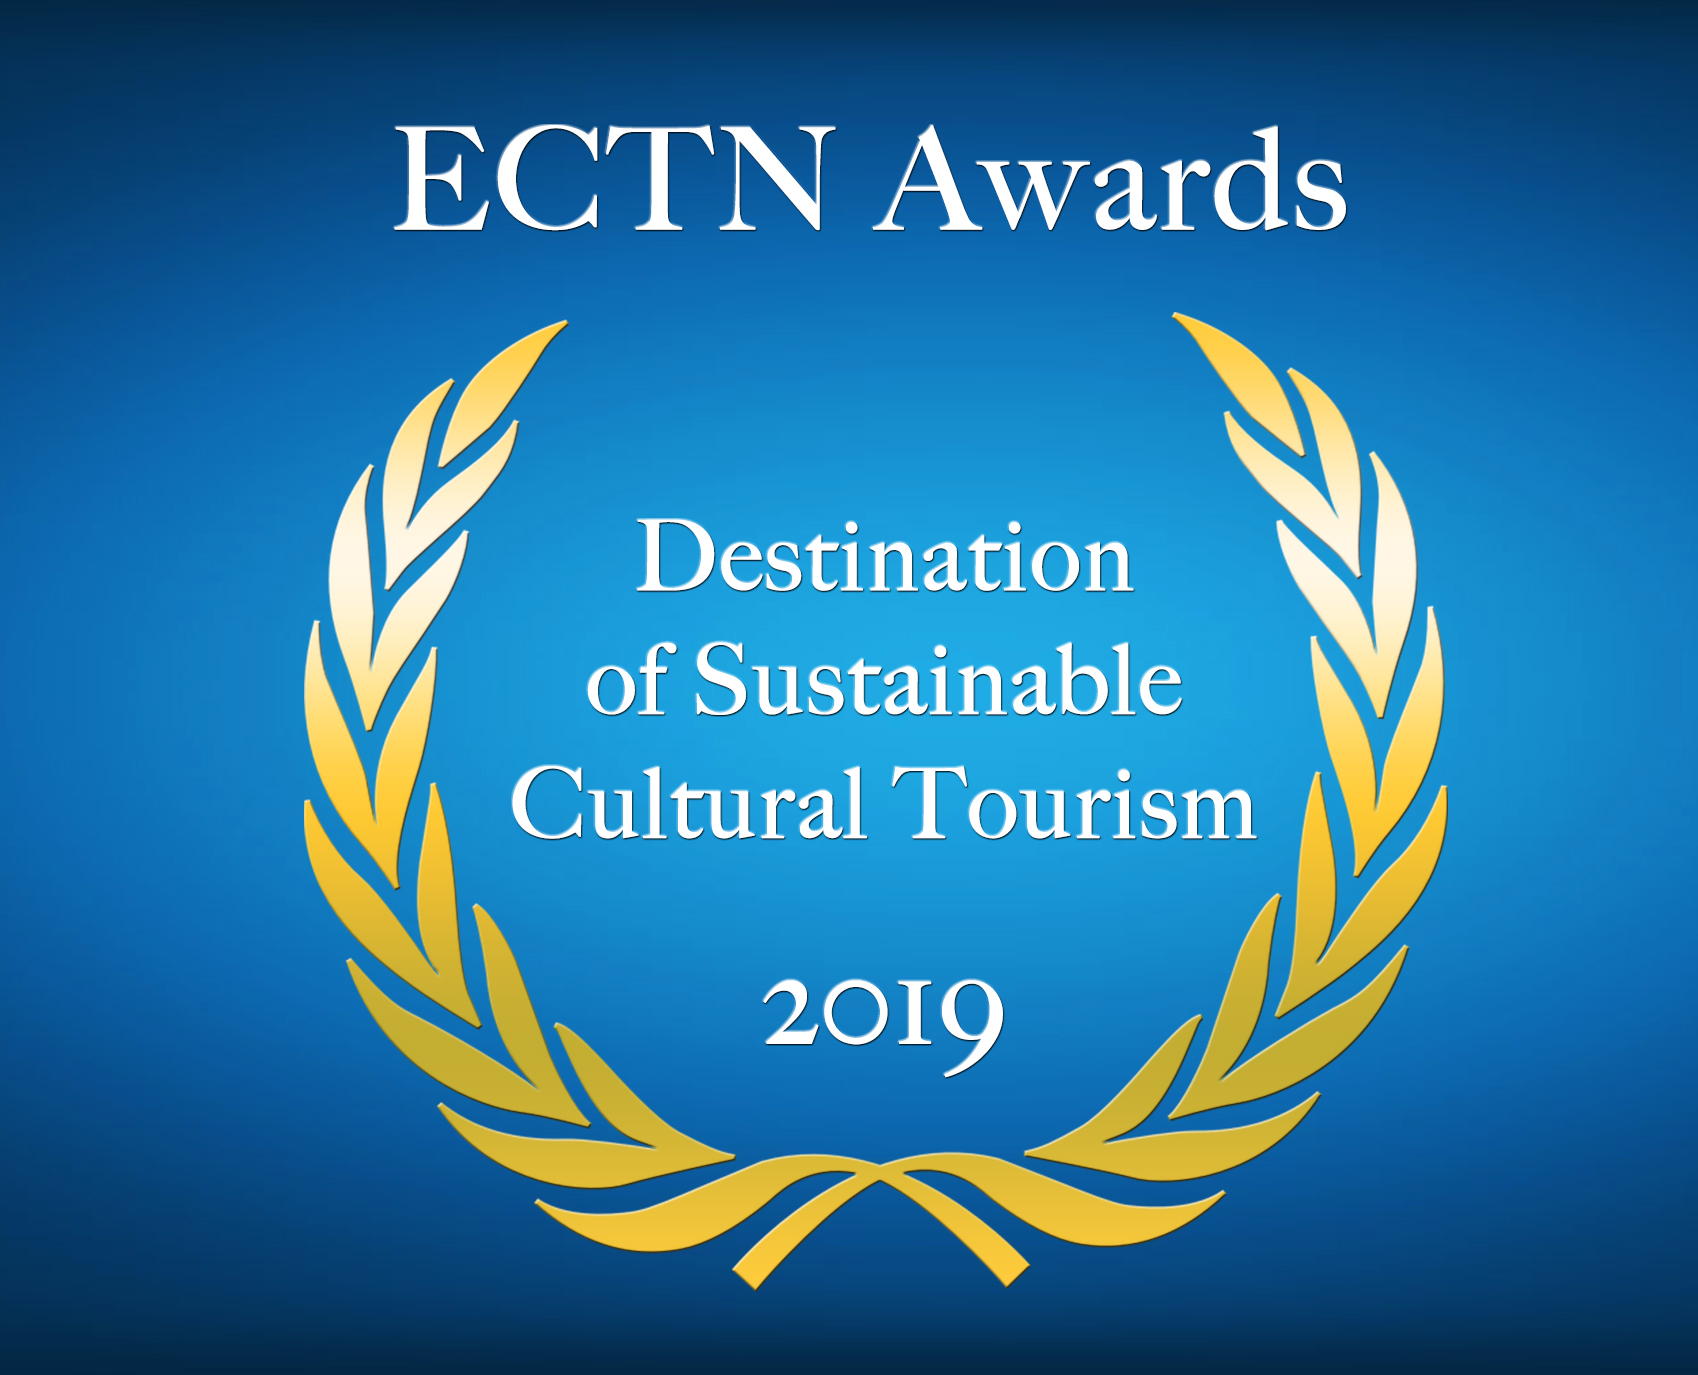 VTA's Good Practice wins Cultural Tourism Award !